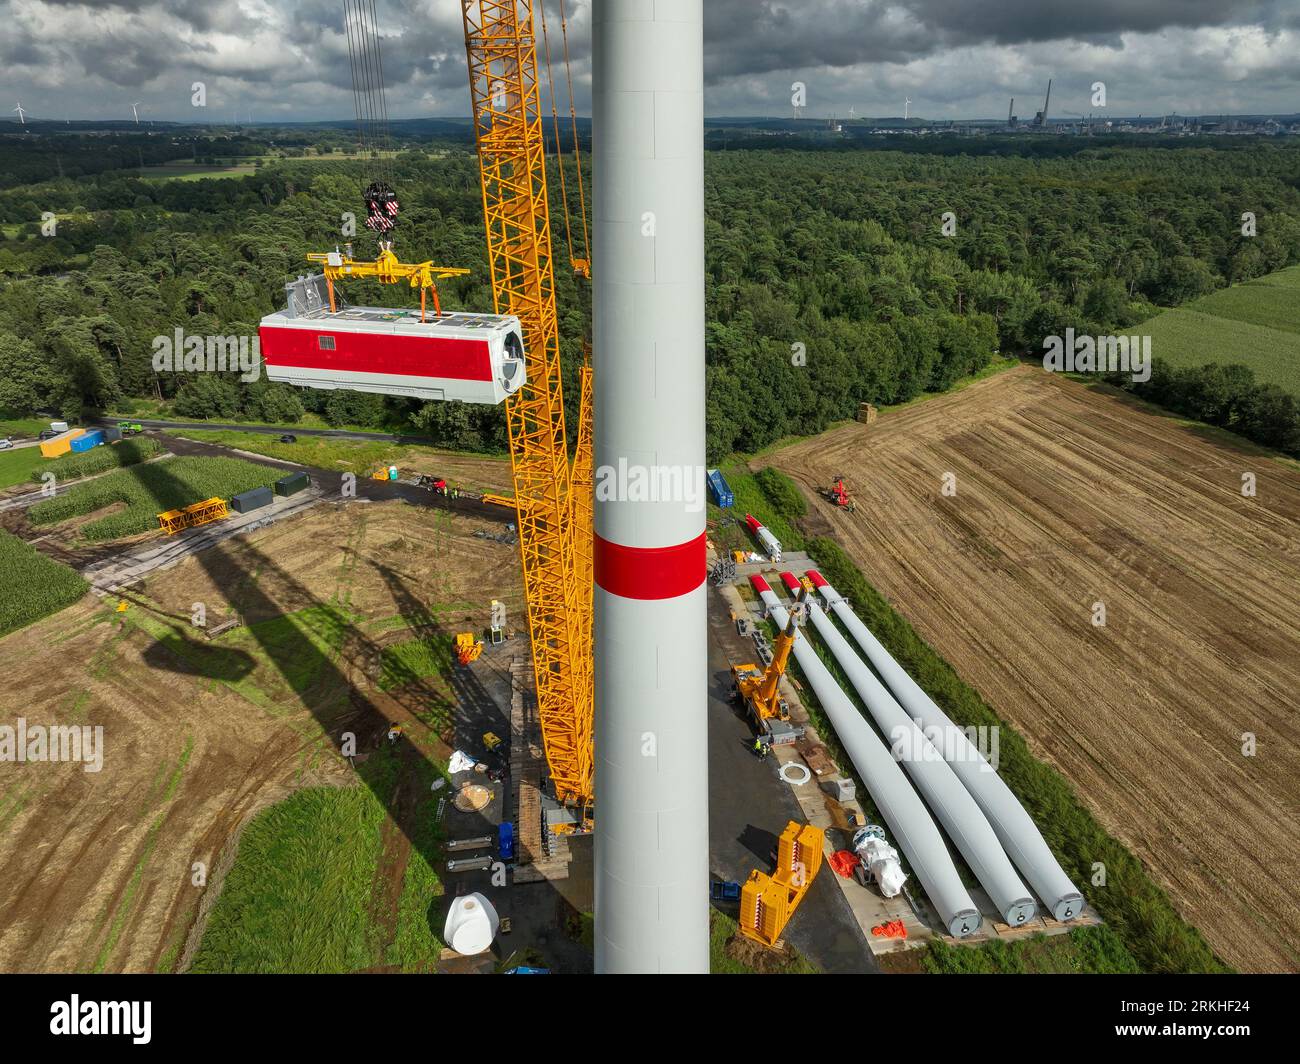 Dorsten, Renania settentrionale-Vestfalia, Germania - costruzione di una turbina eolica, la prima turbina eolica del parco eolico grosse Heide. Un grande cran mobile Foto Stock